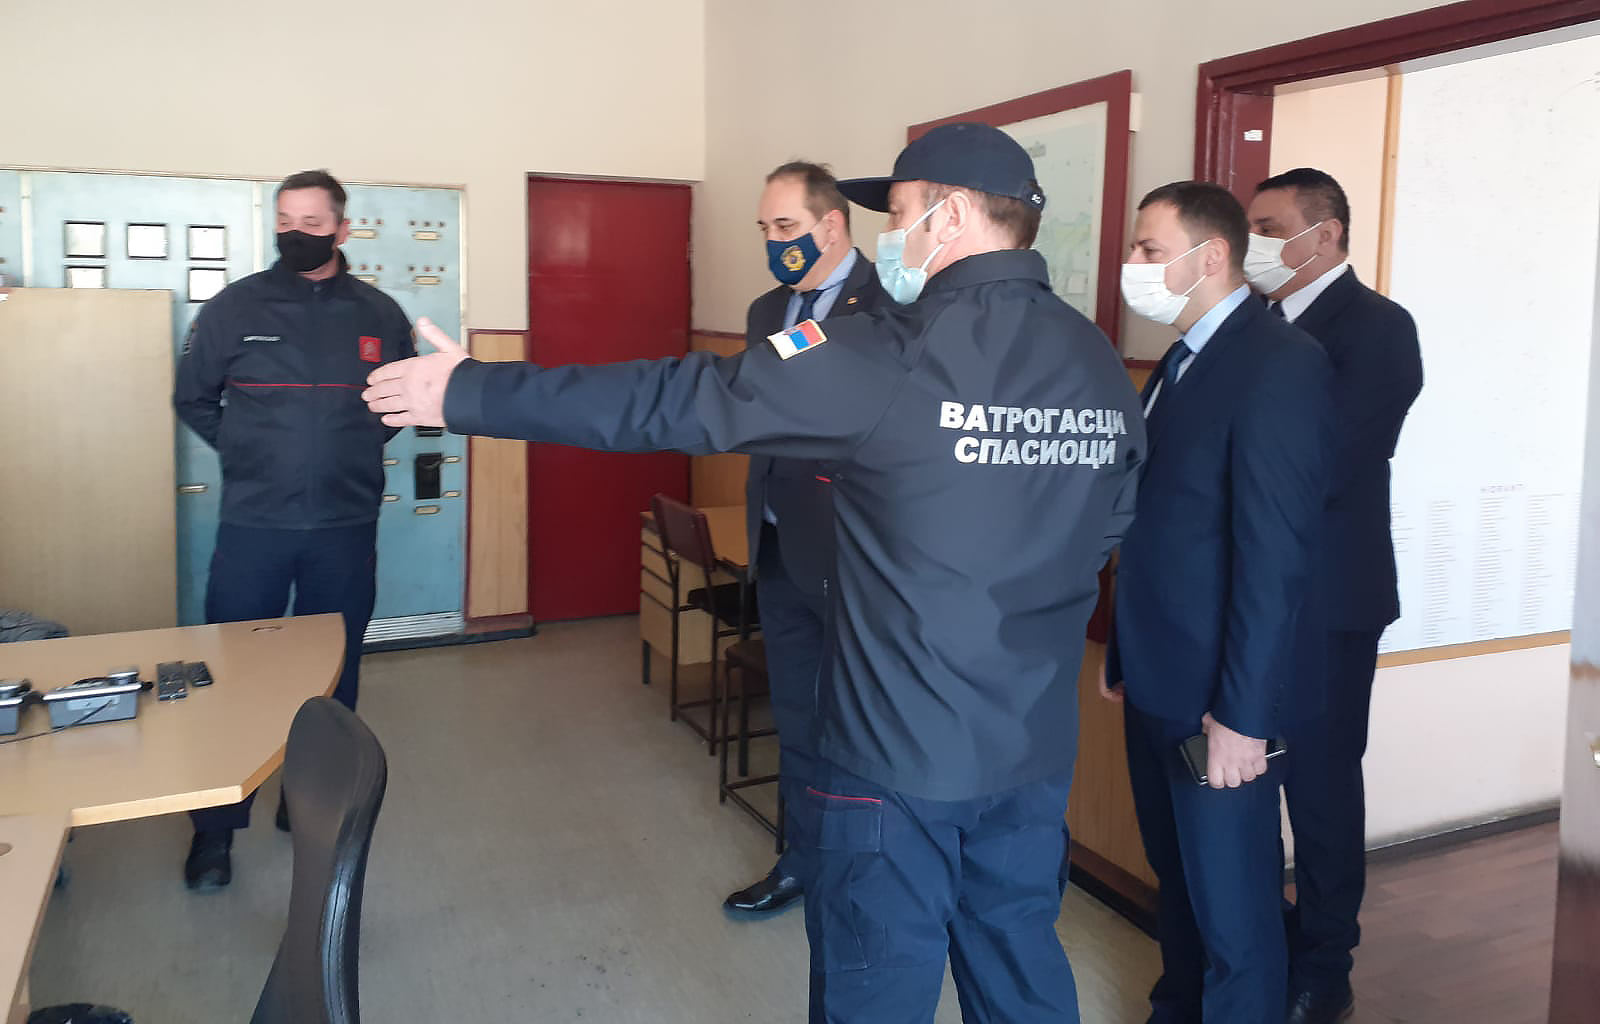 Јоцић: МУП ће пружити пуну подршку јачању и оснивању добровољних ватрогасних друштава